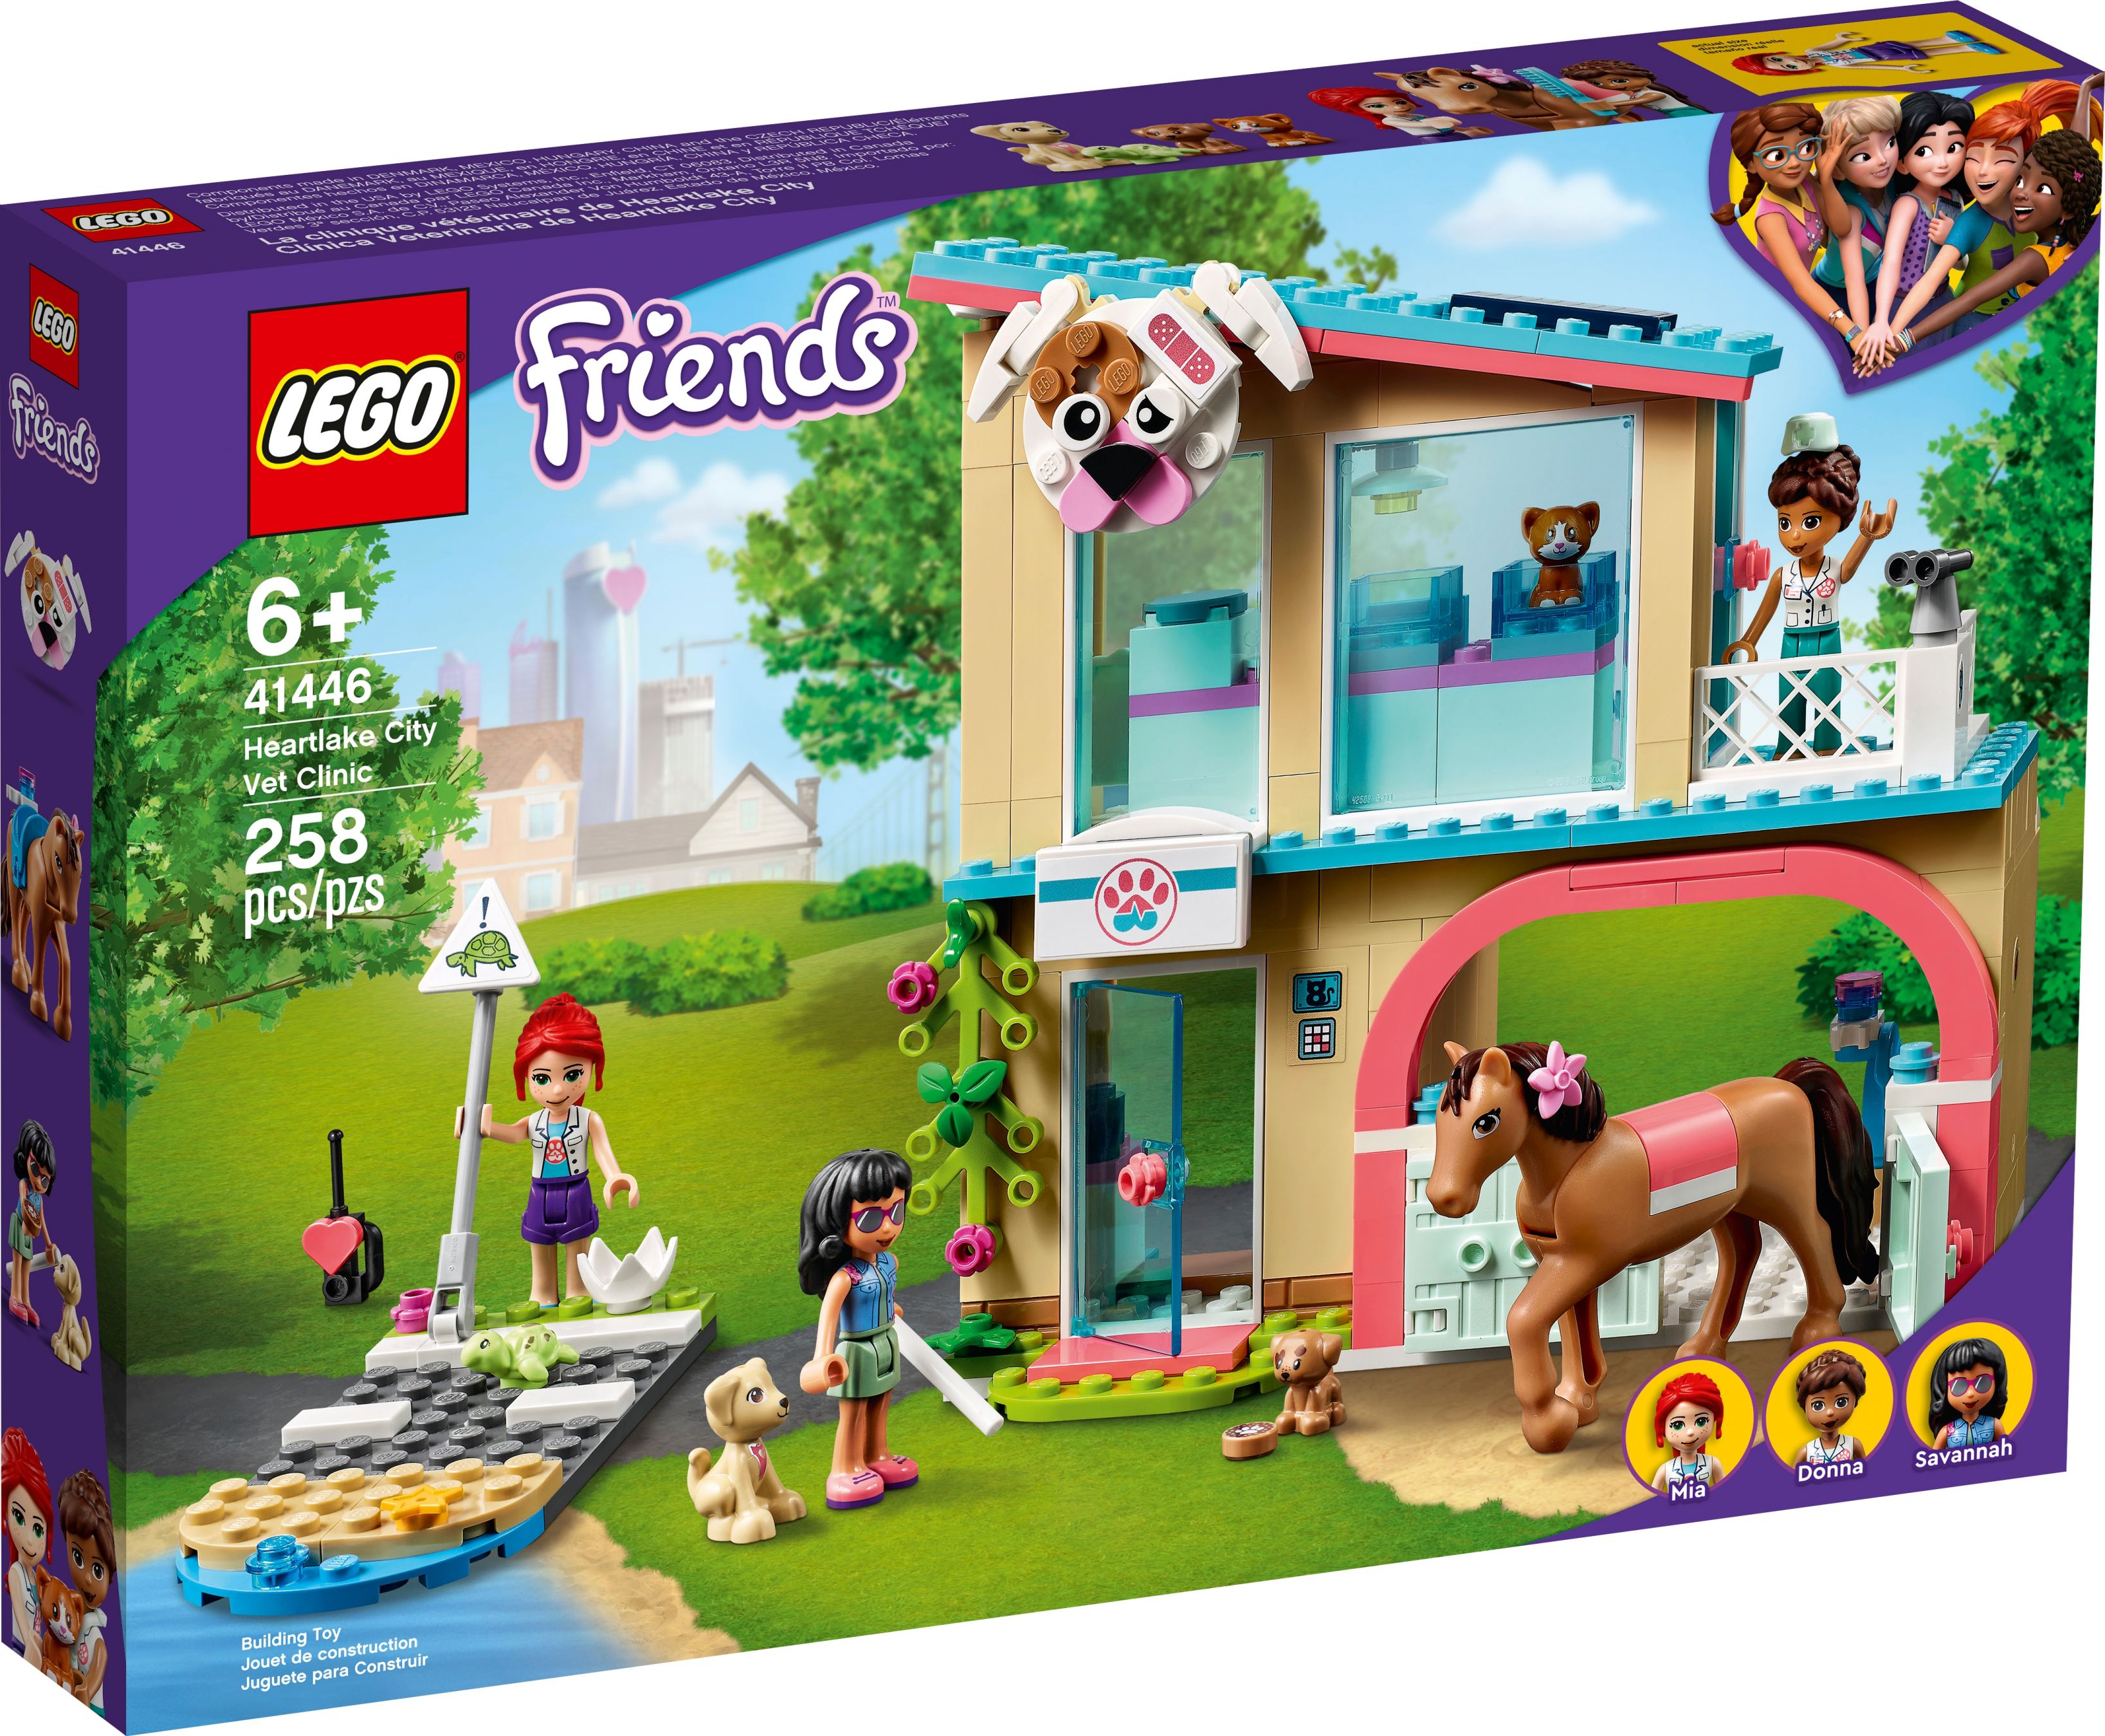 LEGO Friends 41446 Heartlake City Tierklinik LEGO_41446_alt1.jpg